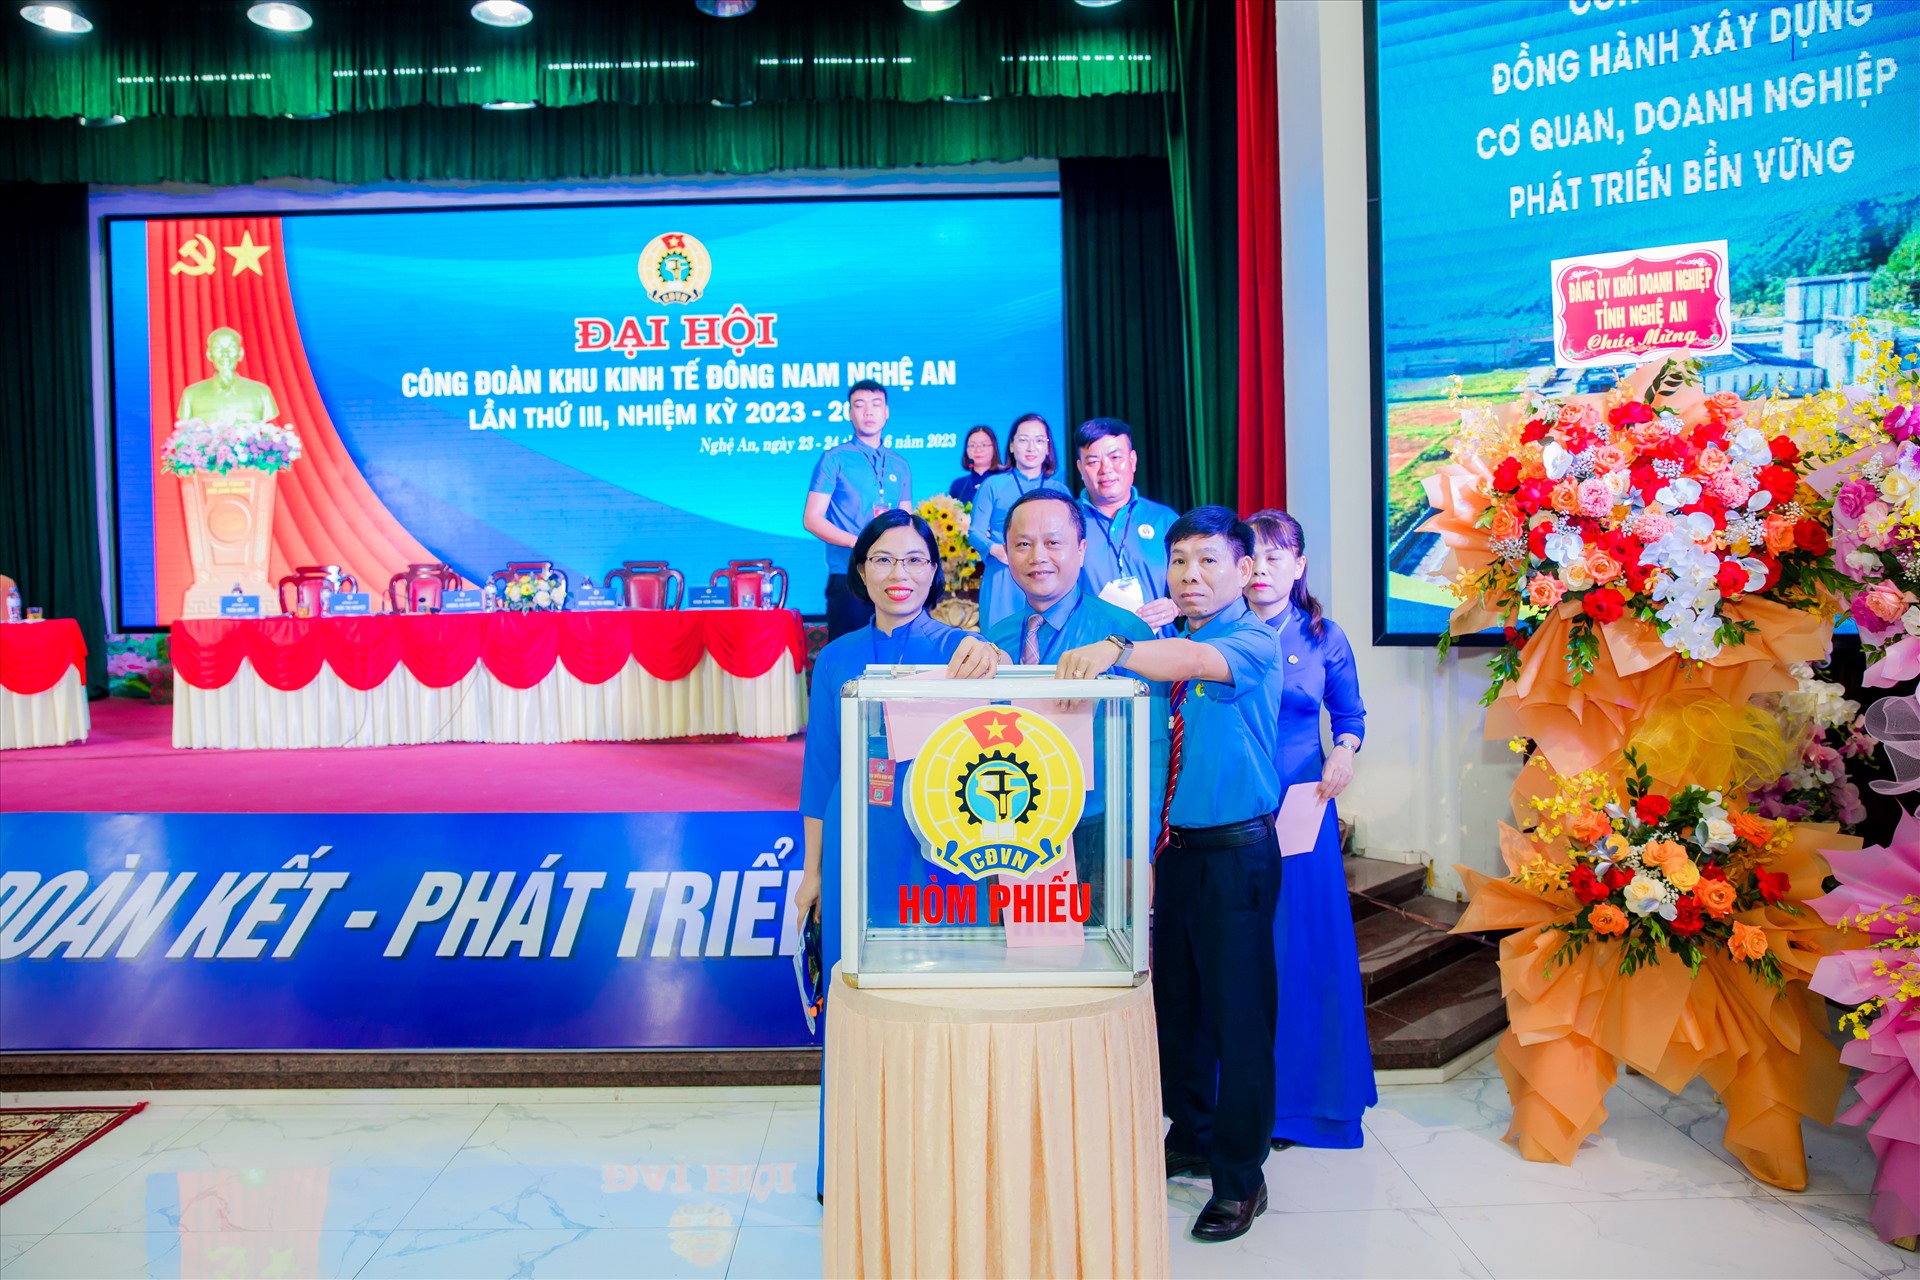 Các đại biểu đã tiến hành bỏ phiếu bầu Ban Chấp hành công đoàn Khu kinh tế Đông Nam nhiệm kỳ 2023 -2028. Ảnh: Quỳnh Trang